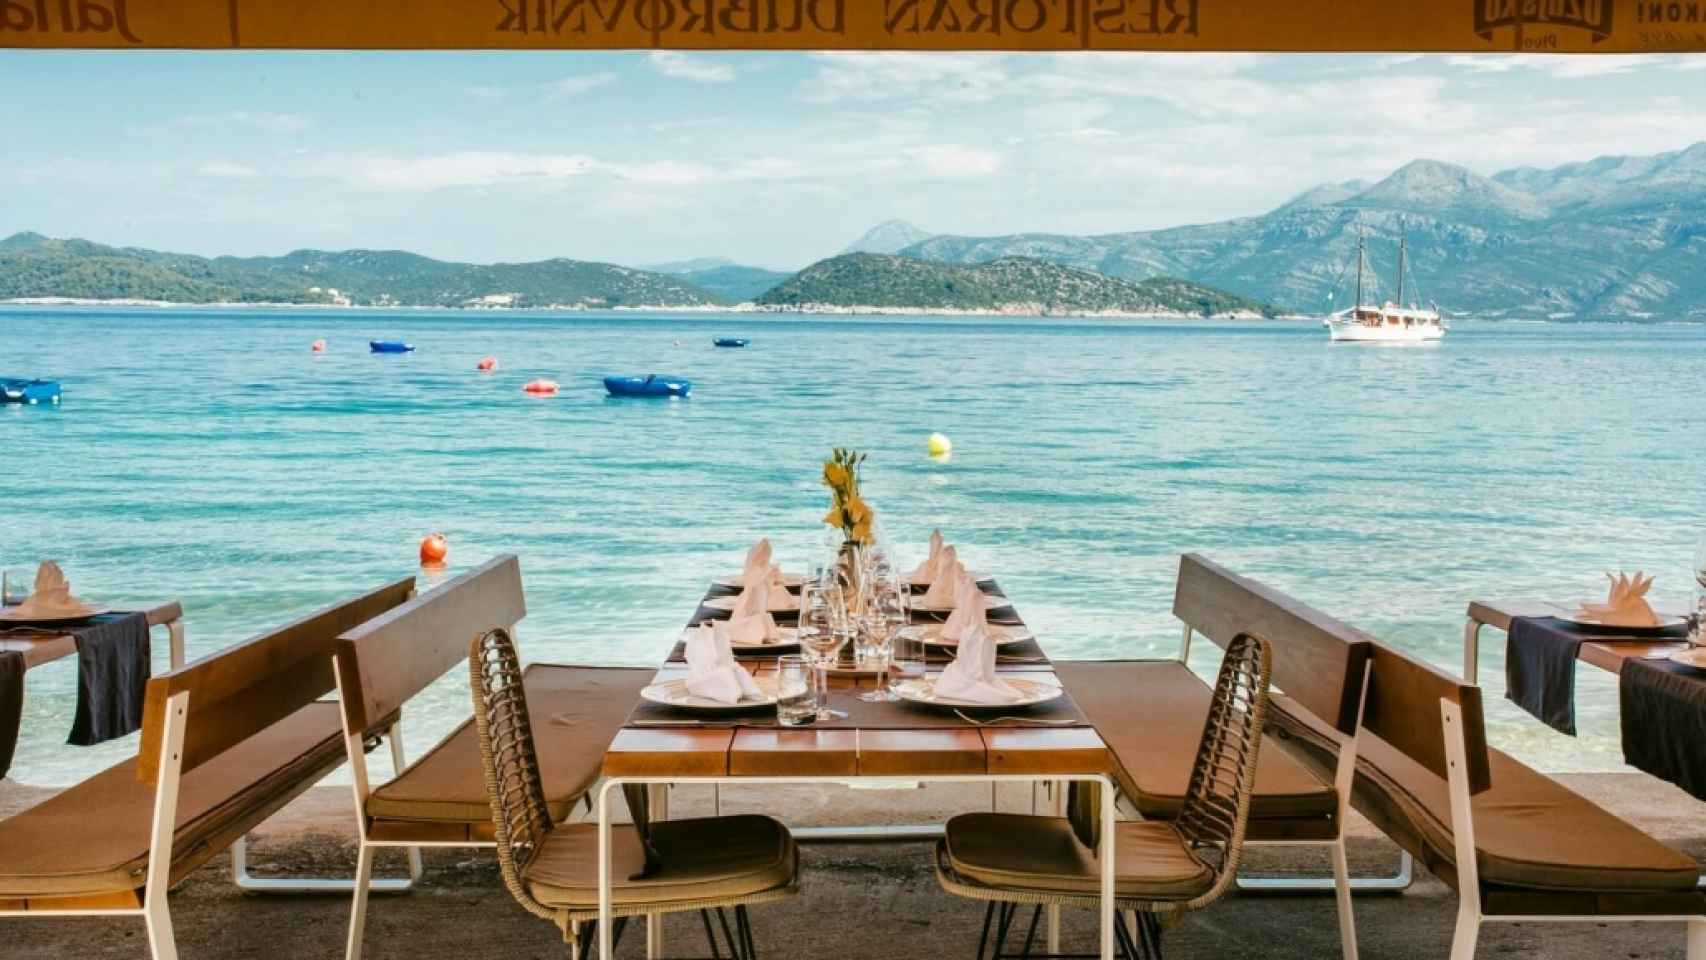 Detalle de las vistas desde el restaurante Dubrovnik en Lopdu.